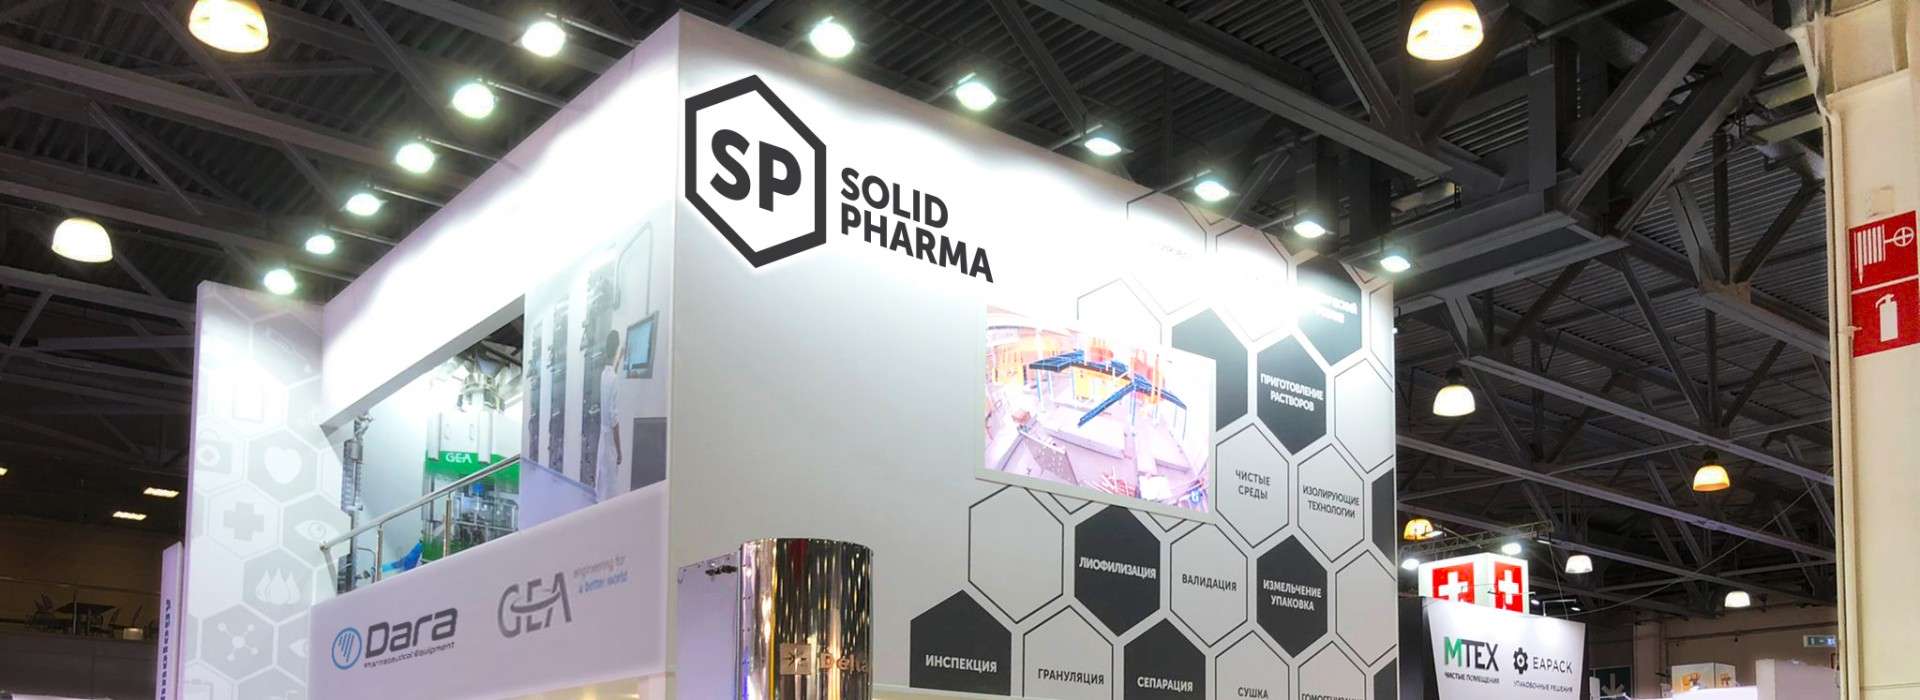 Dara Pharmaceutical Equipment at Pharmtech & Ingredients